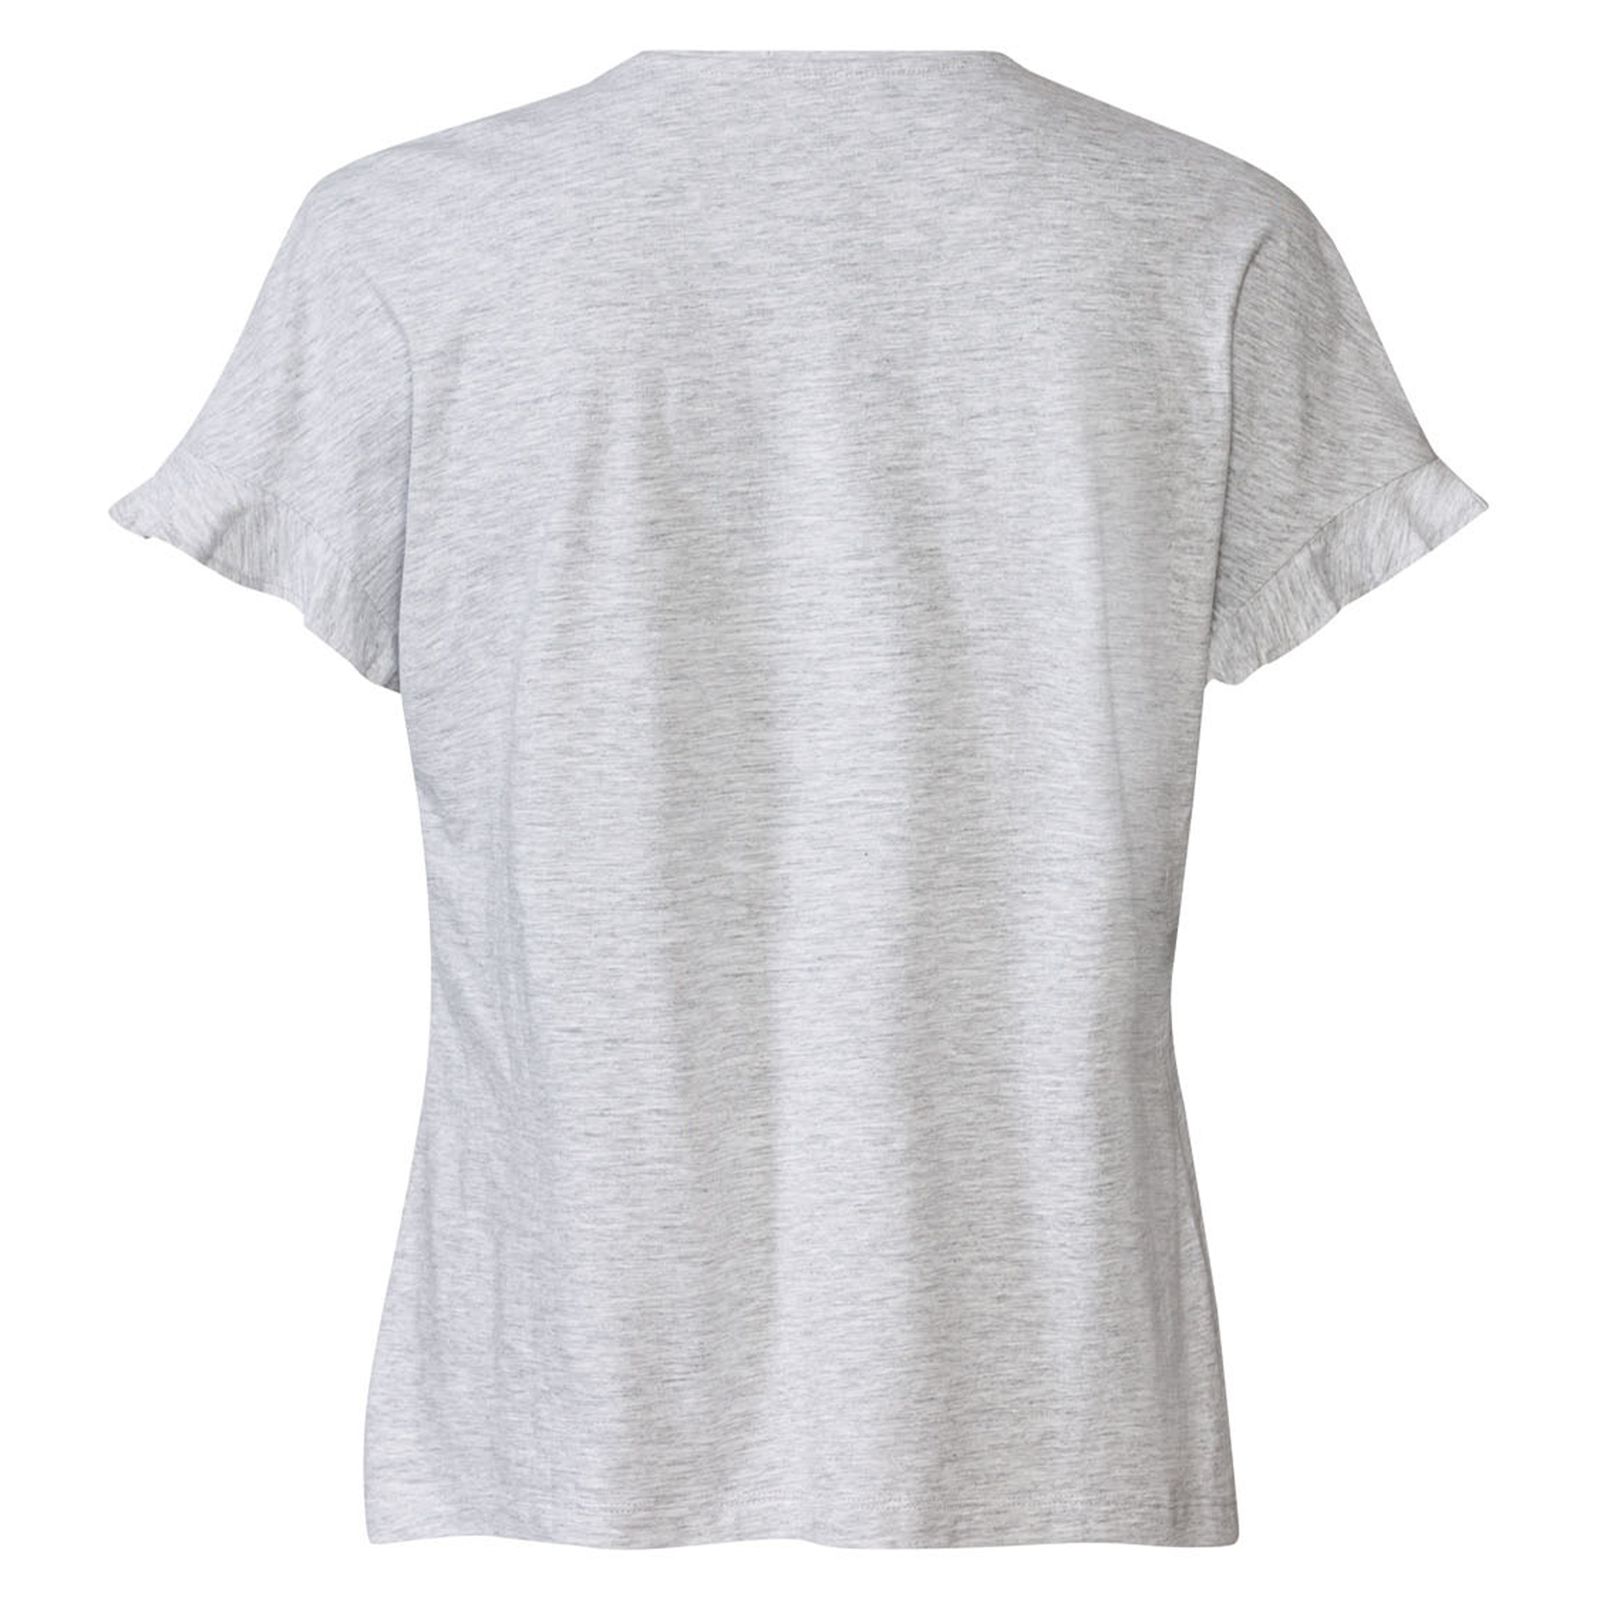 تی شرت آستین کوتاه زنانه اسمارا مدل 372049 -  - 2